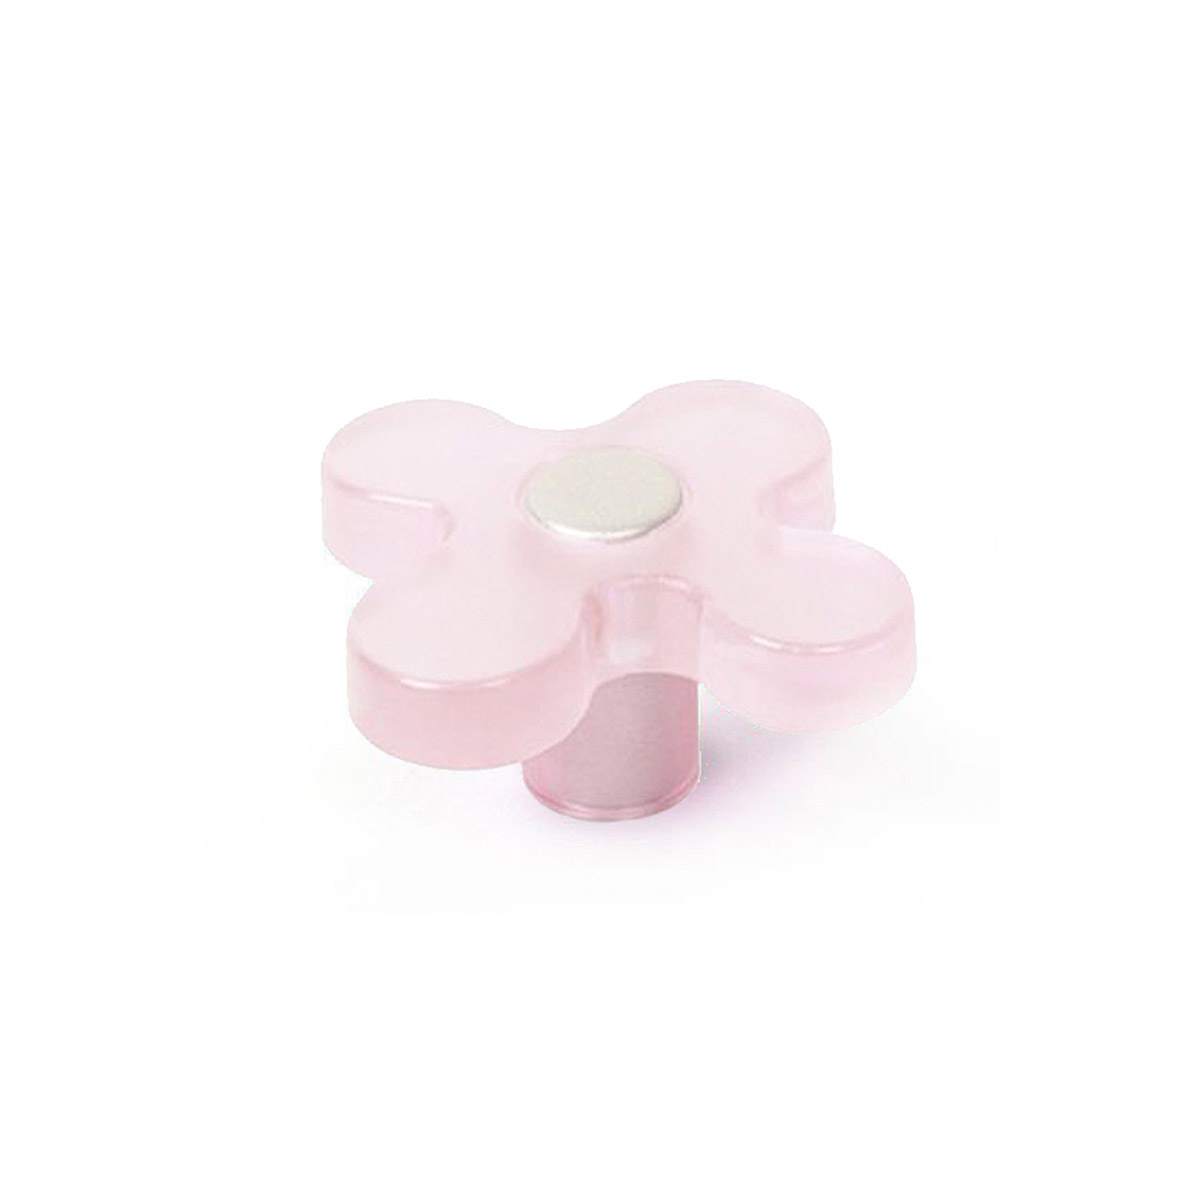 Bouton en plastique avec finition rose clair, dimensions: 49x49x26mm Ø: 49mm